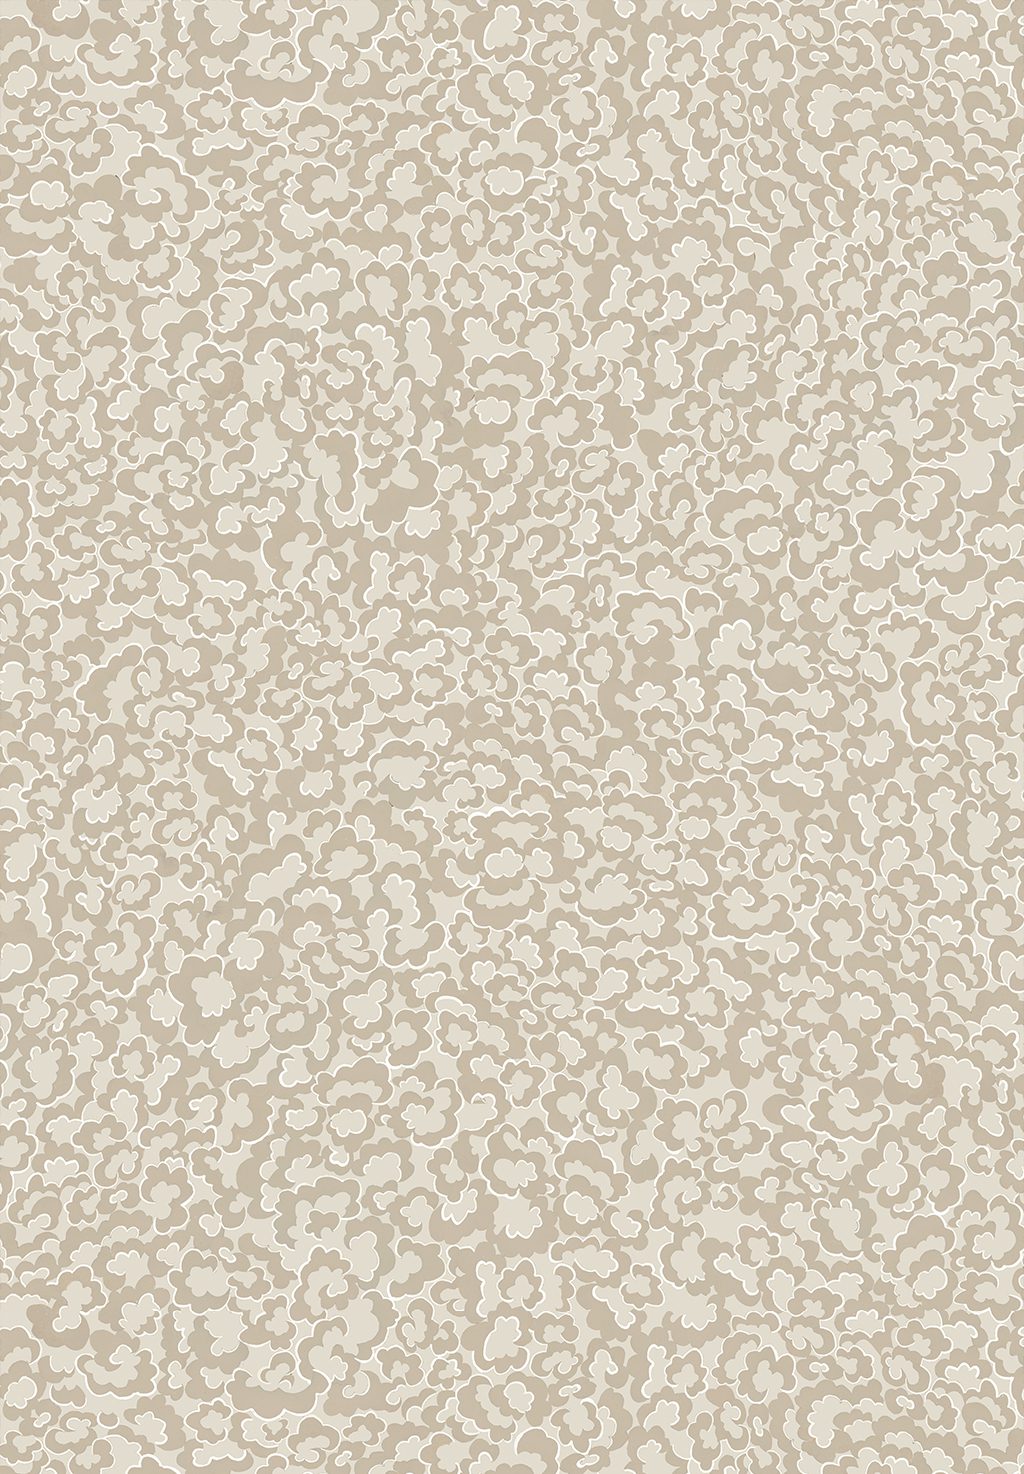 Josephine-Munsey-wallpaper-clouds-small-pattern-repeat-tonal-stylized-cliffwell-stone